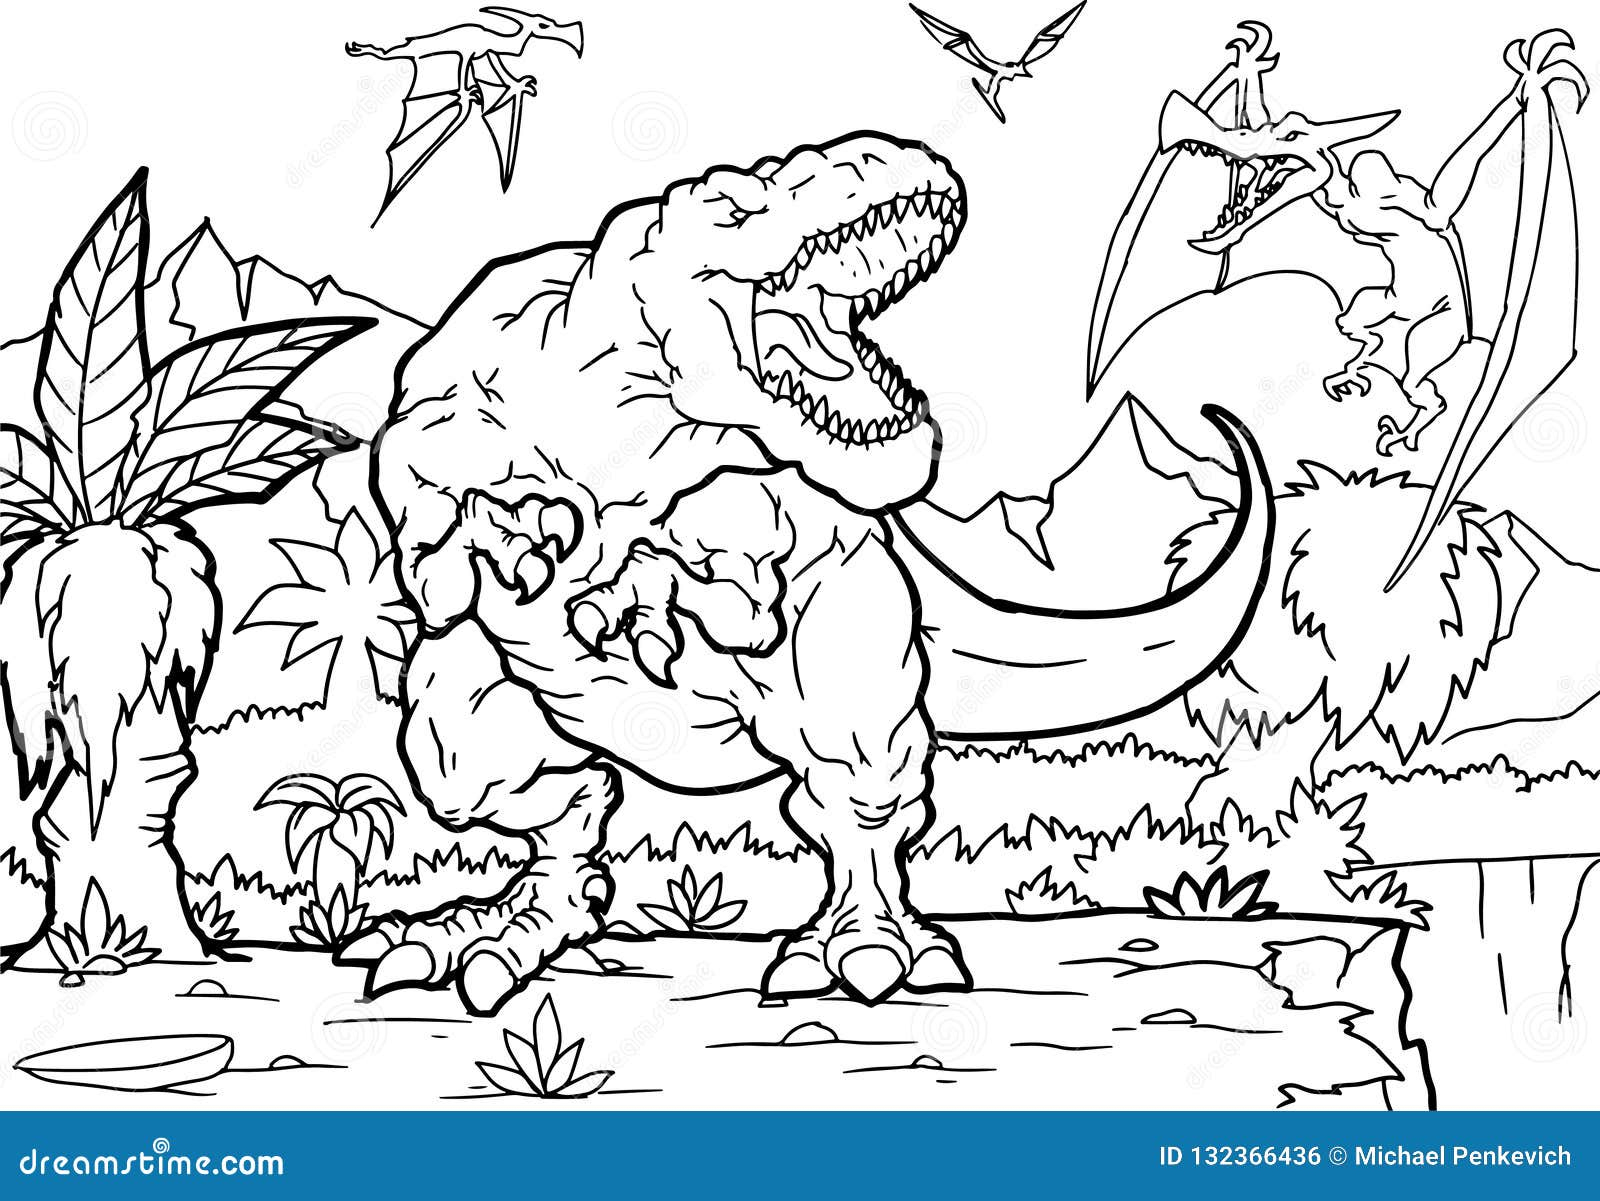 Livre De Coloriage De Tyrannosaure De Bande Dessinée Illustration De encequiconcerne Coloriage Tyrannosaure Rex